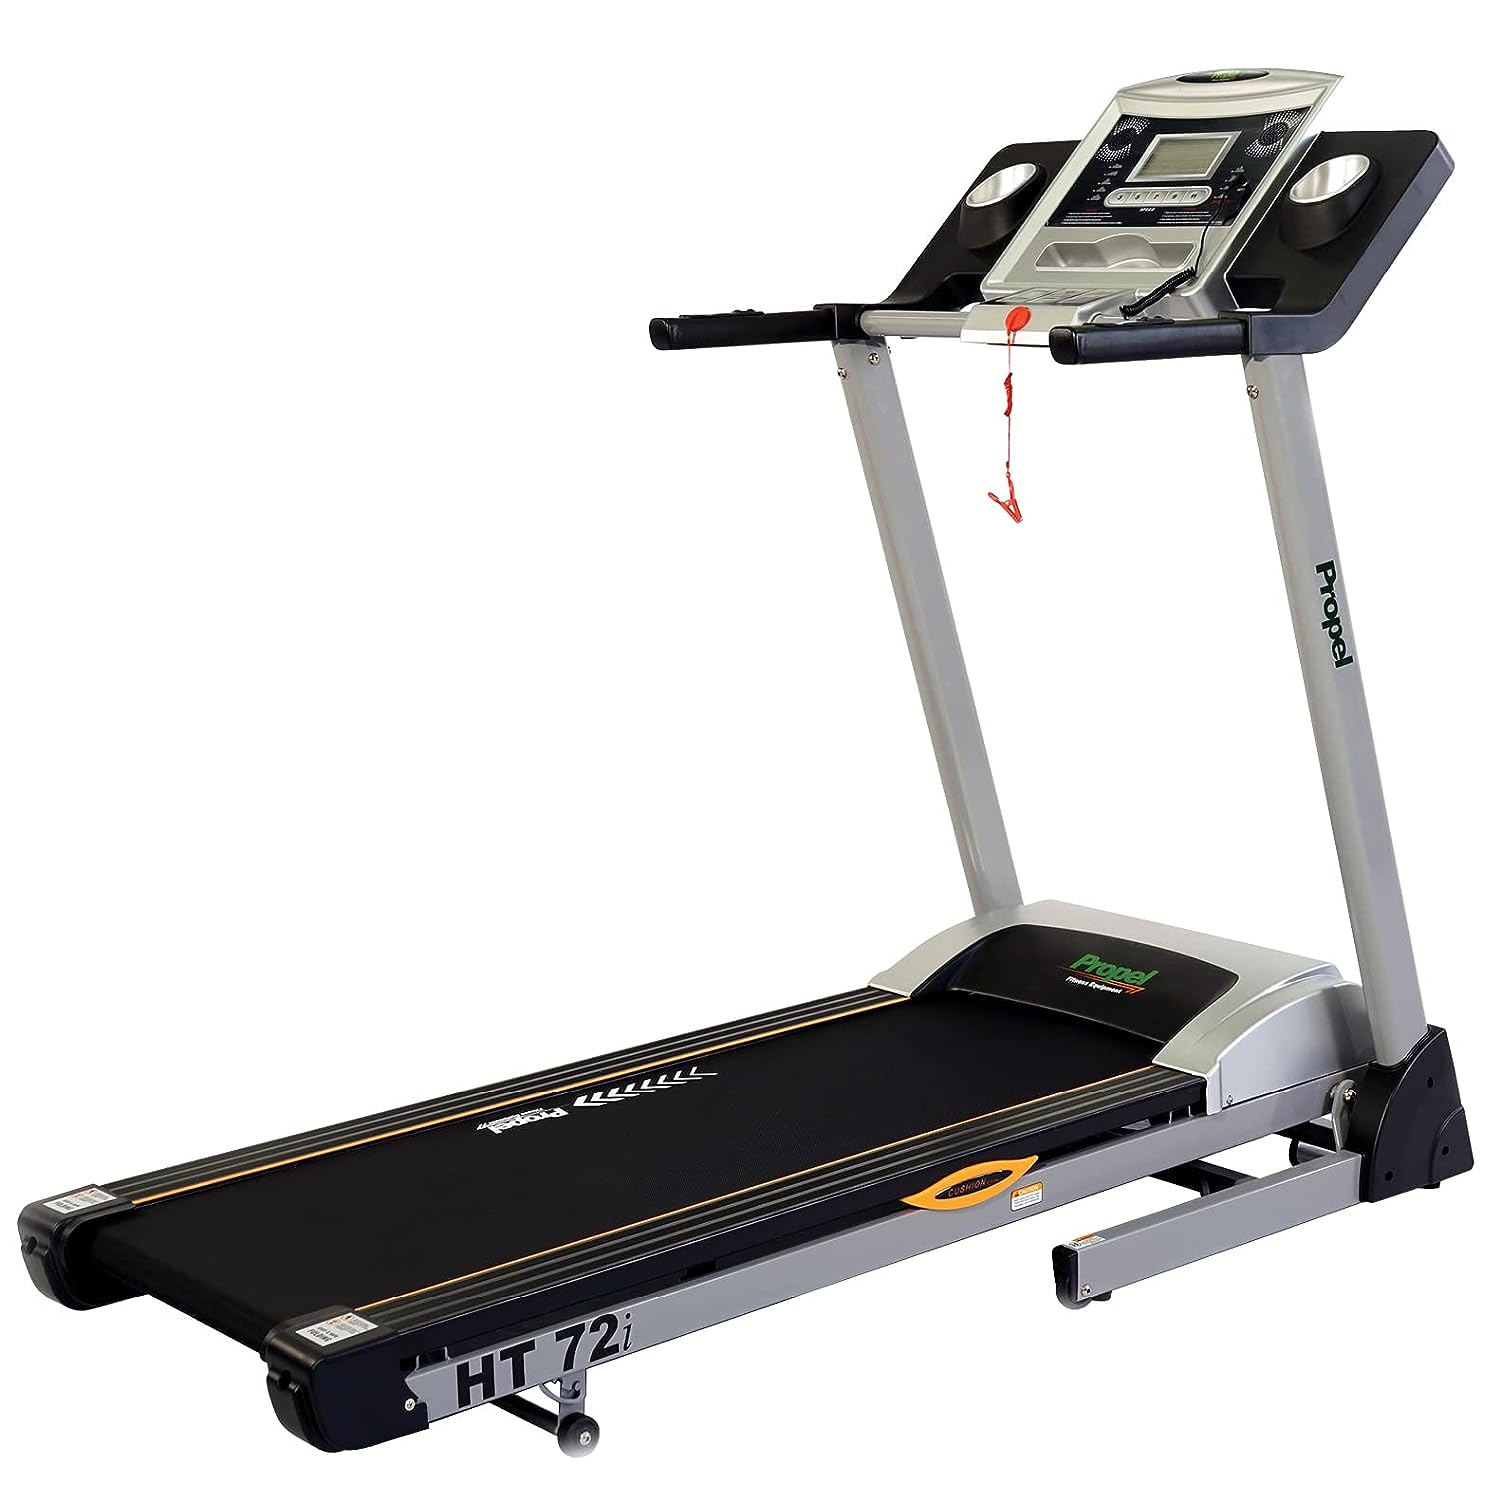 Treadmill HT72i foldable treadmill